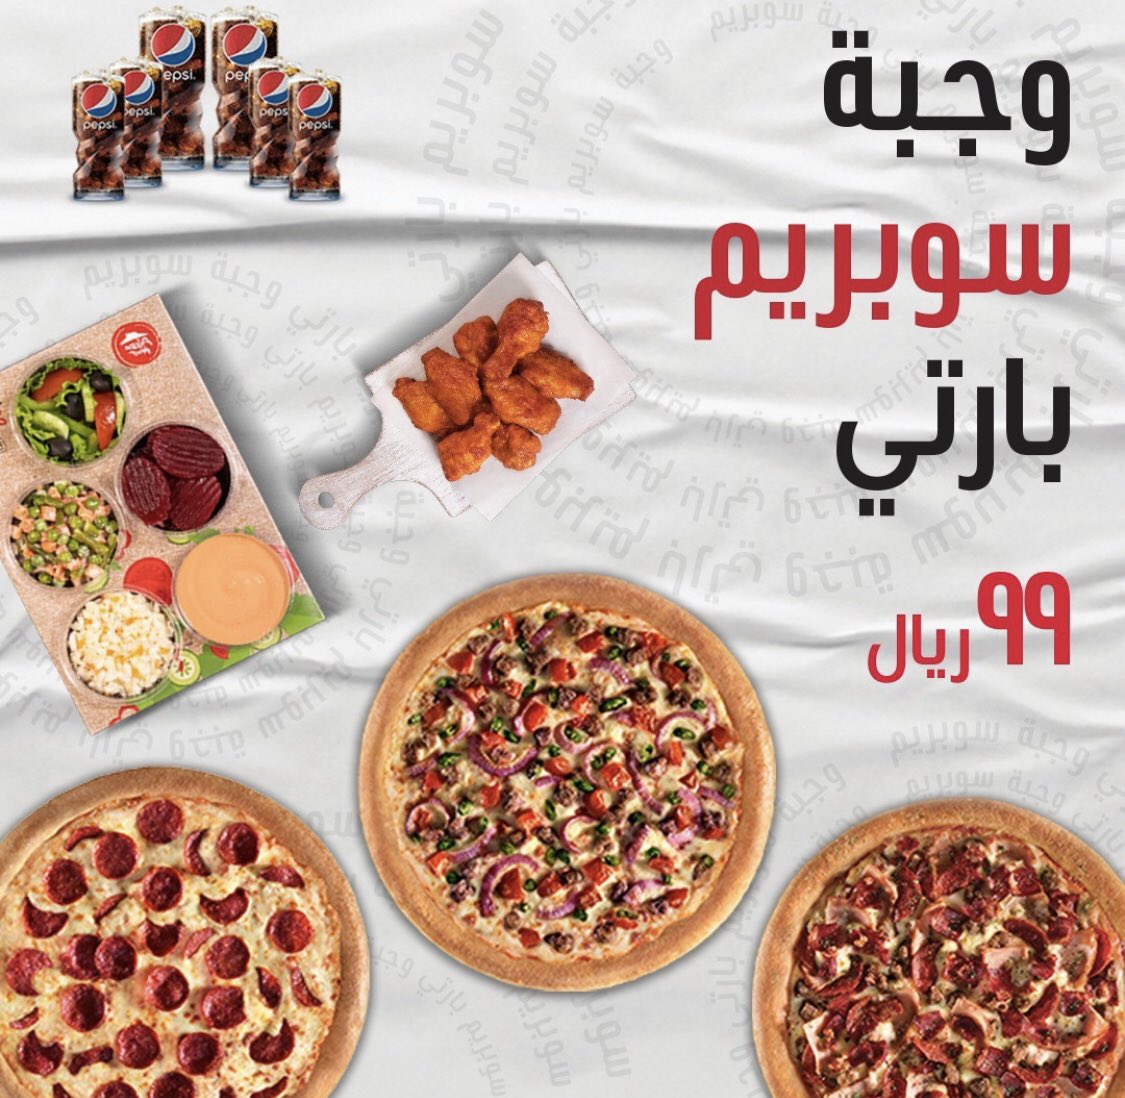 FotnM0oWYAE2TQ4 - عروض مطعم بيتزاهت السعودية الجديدة | اقل الاسعار